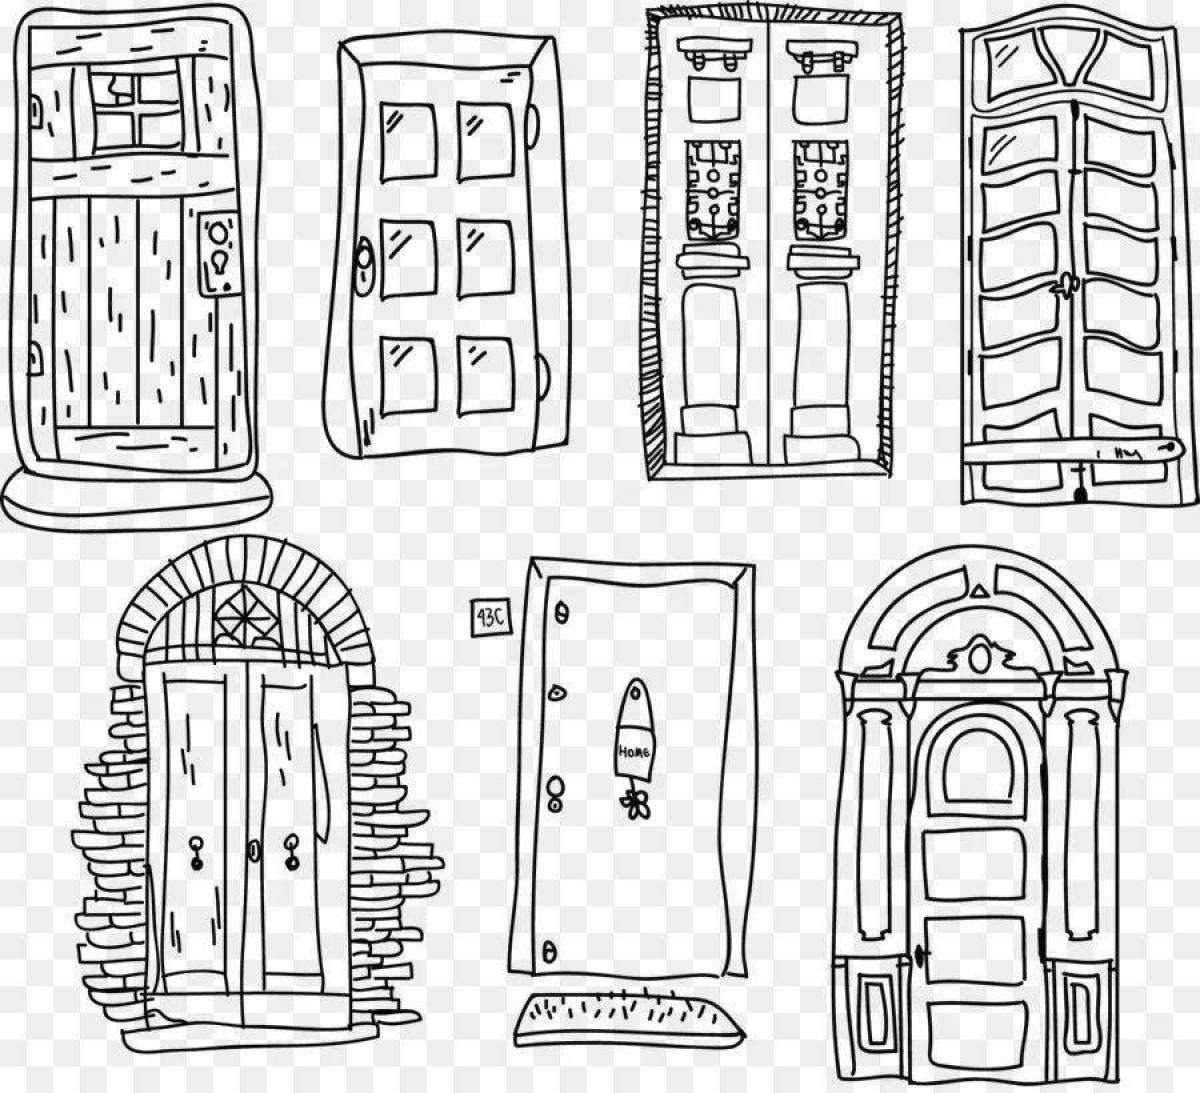 Doors coloring inspiration figure